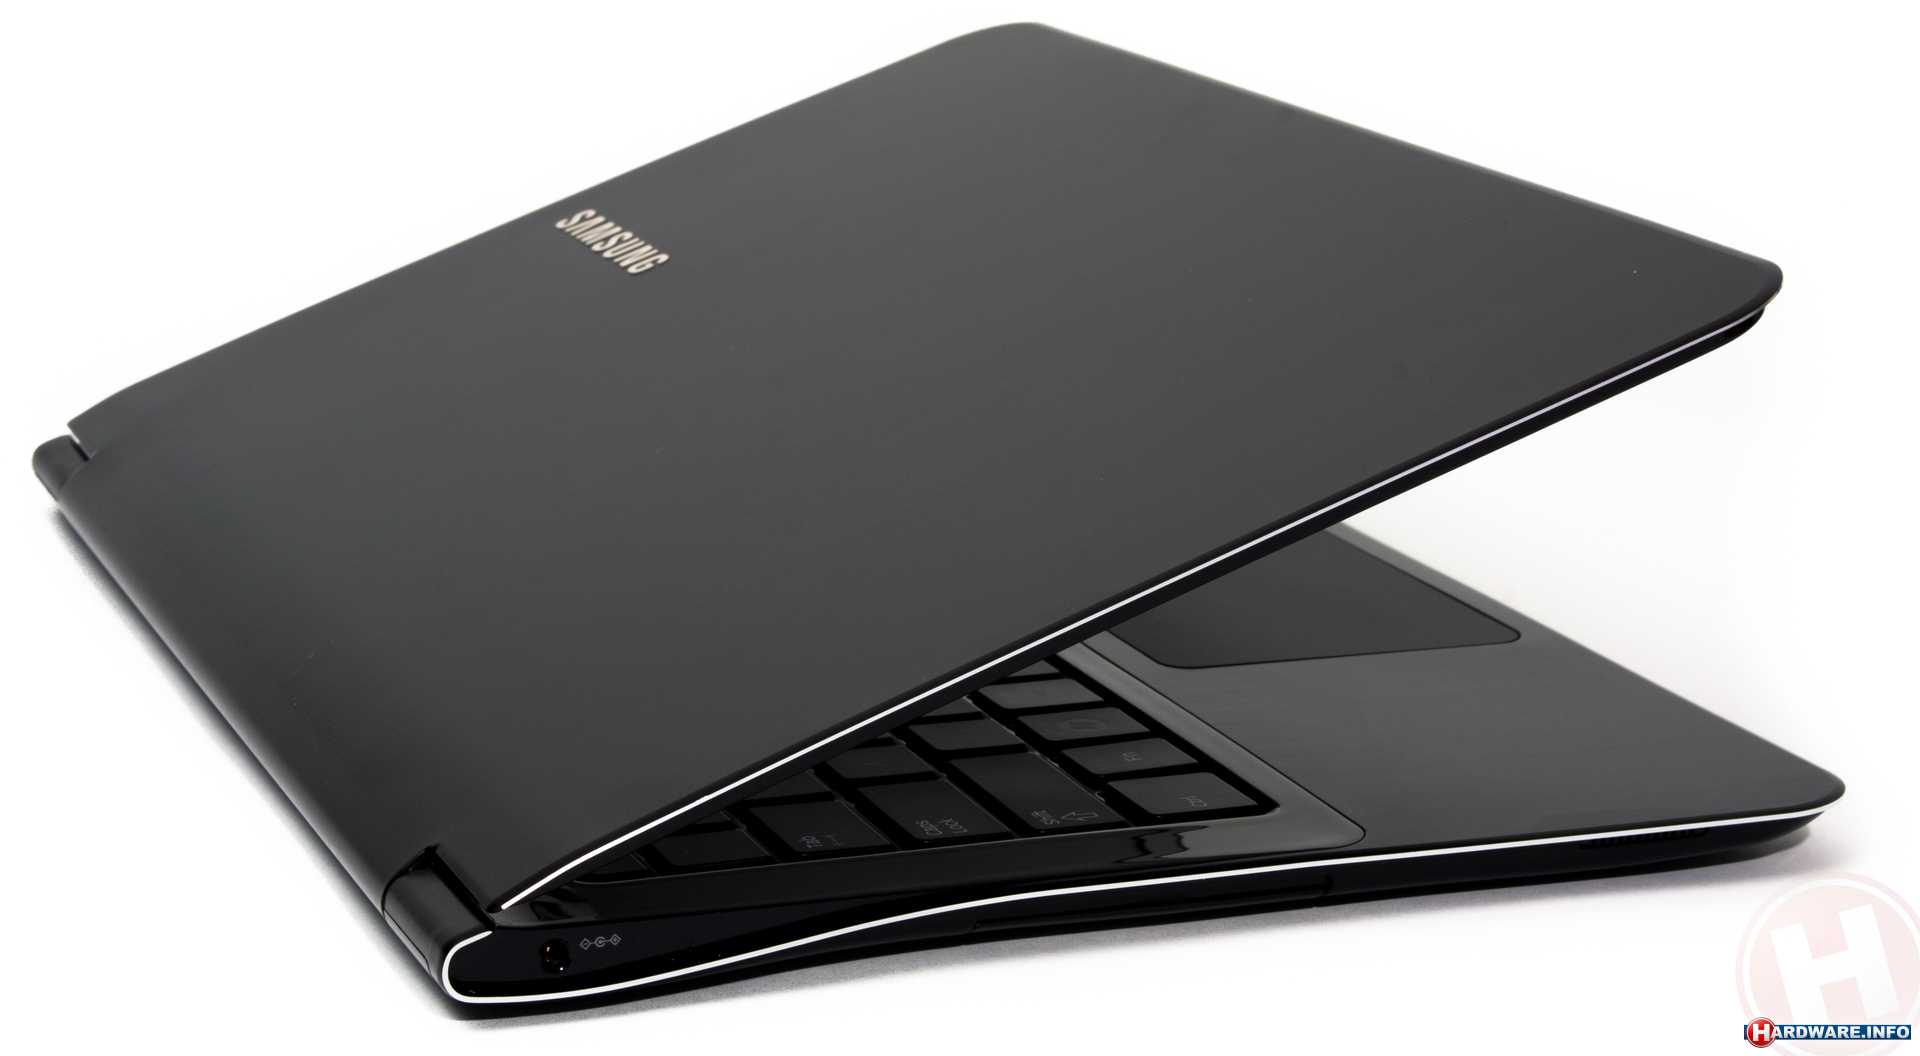 Ноутбук samsung 900x3a-b01 — купить, цена и характеристики, отзывы